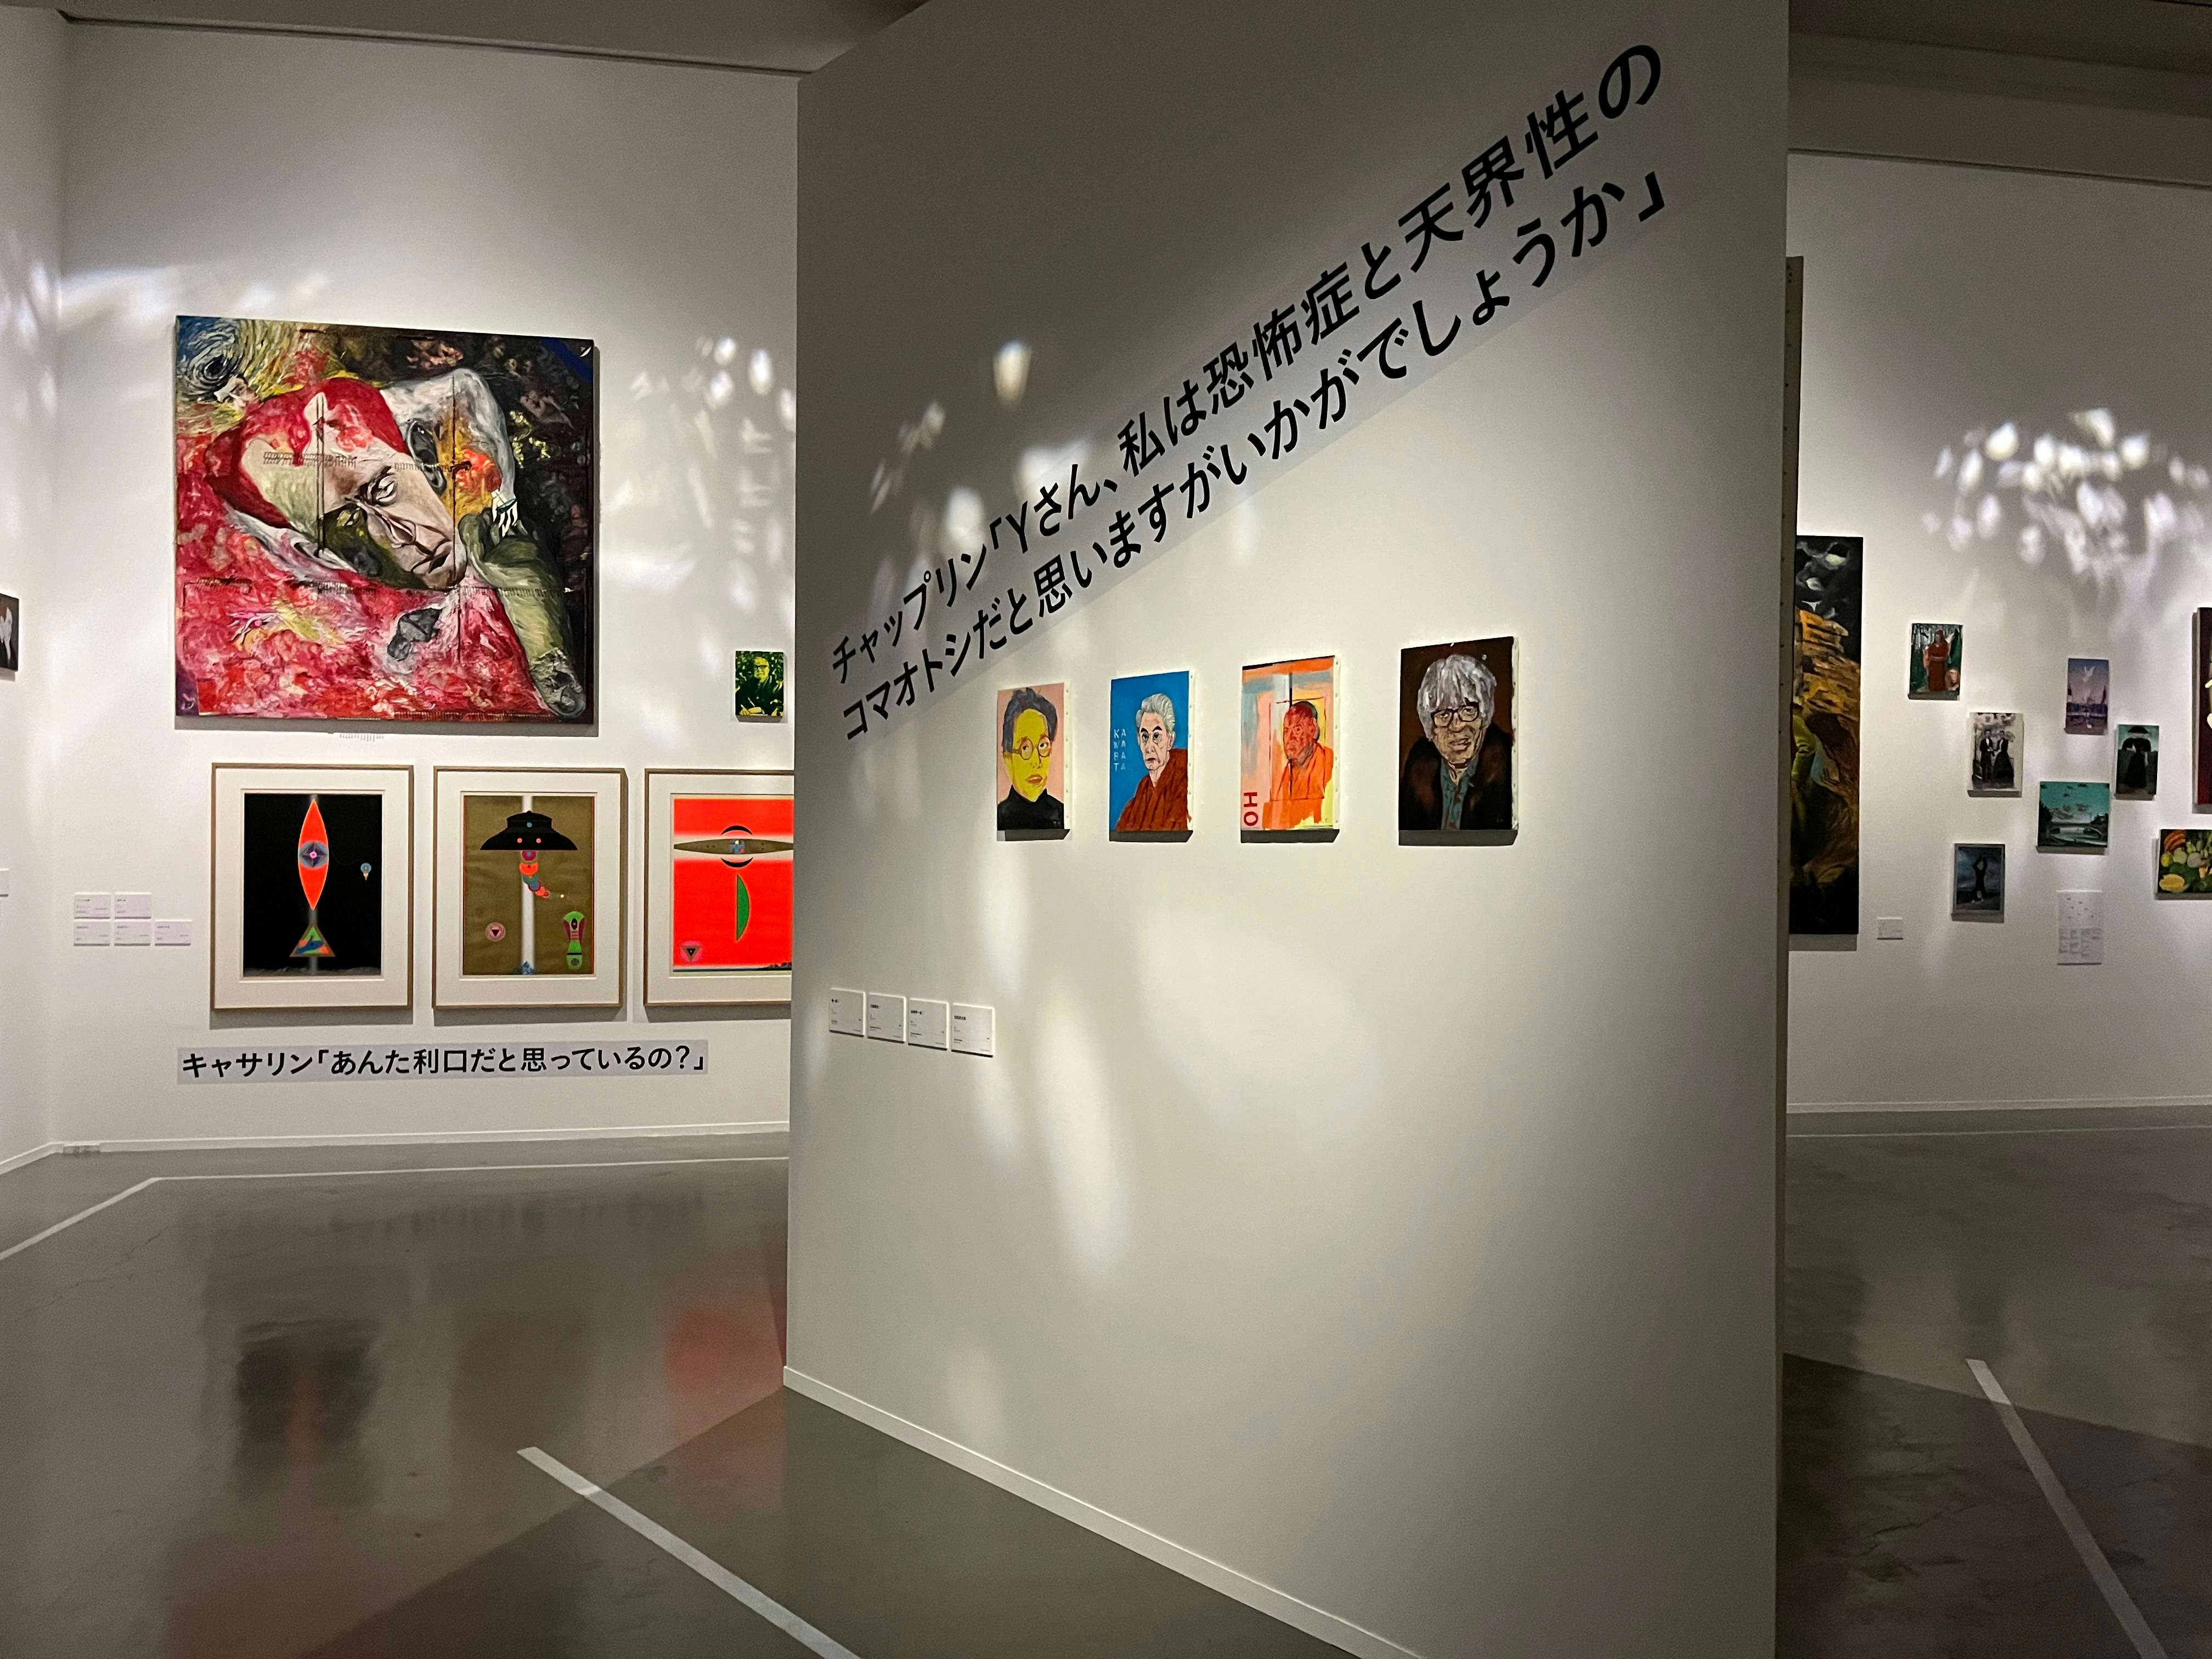 横尾忠則現代美術館で「横尾忠則 原郷の森」が開催。言葉と交わり 